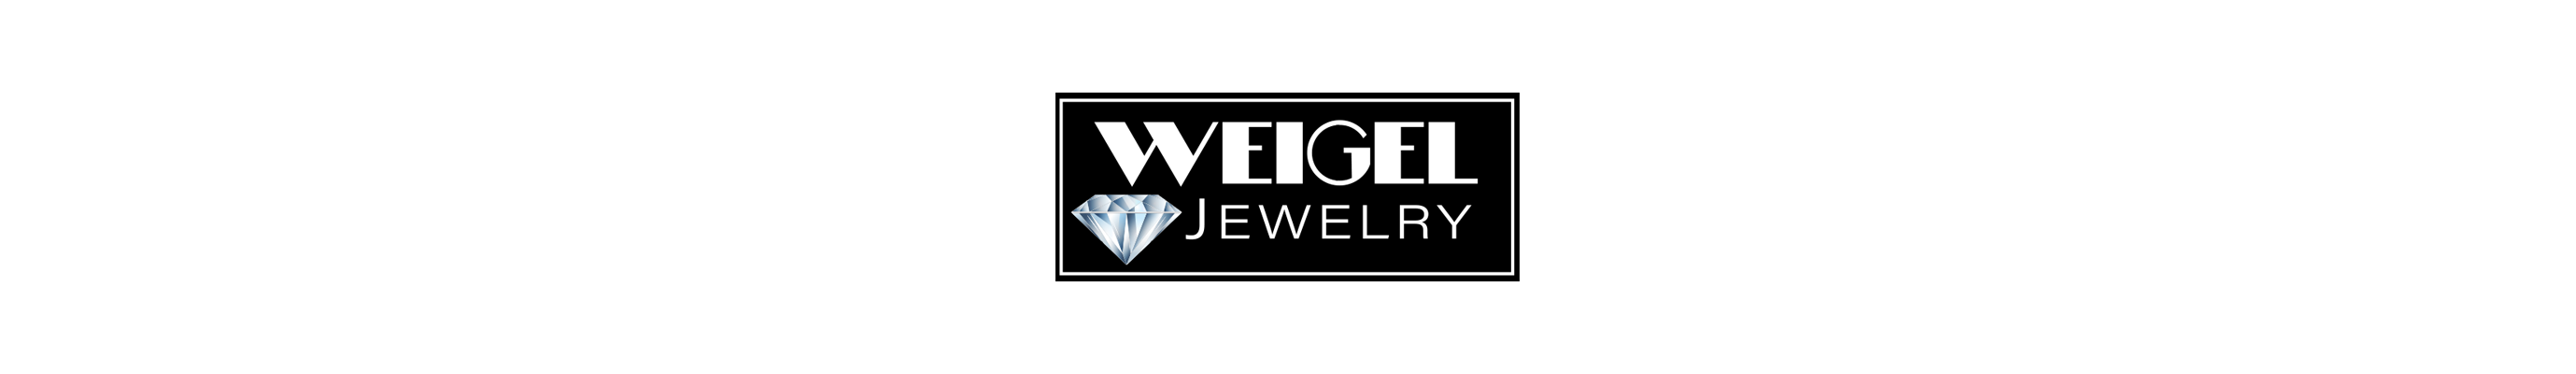 Weigel Jewelry Logo